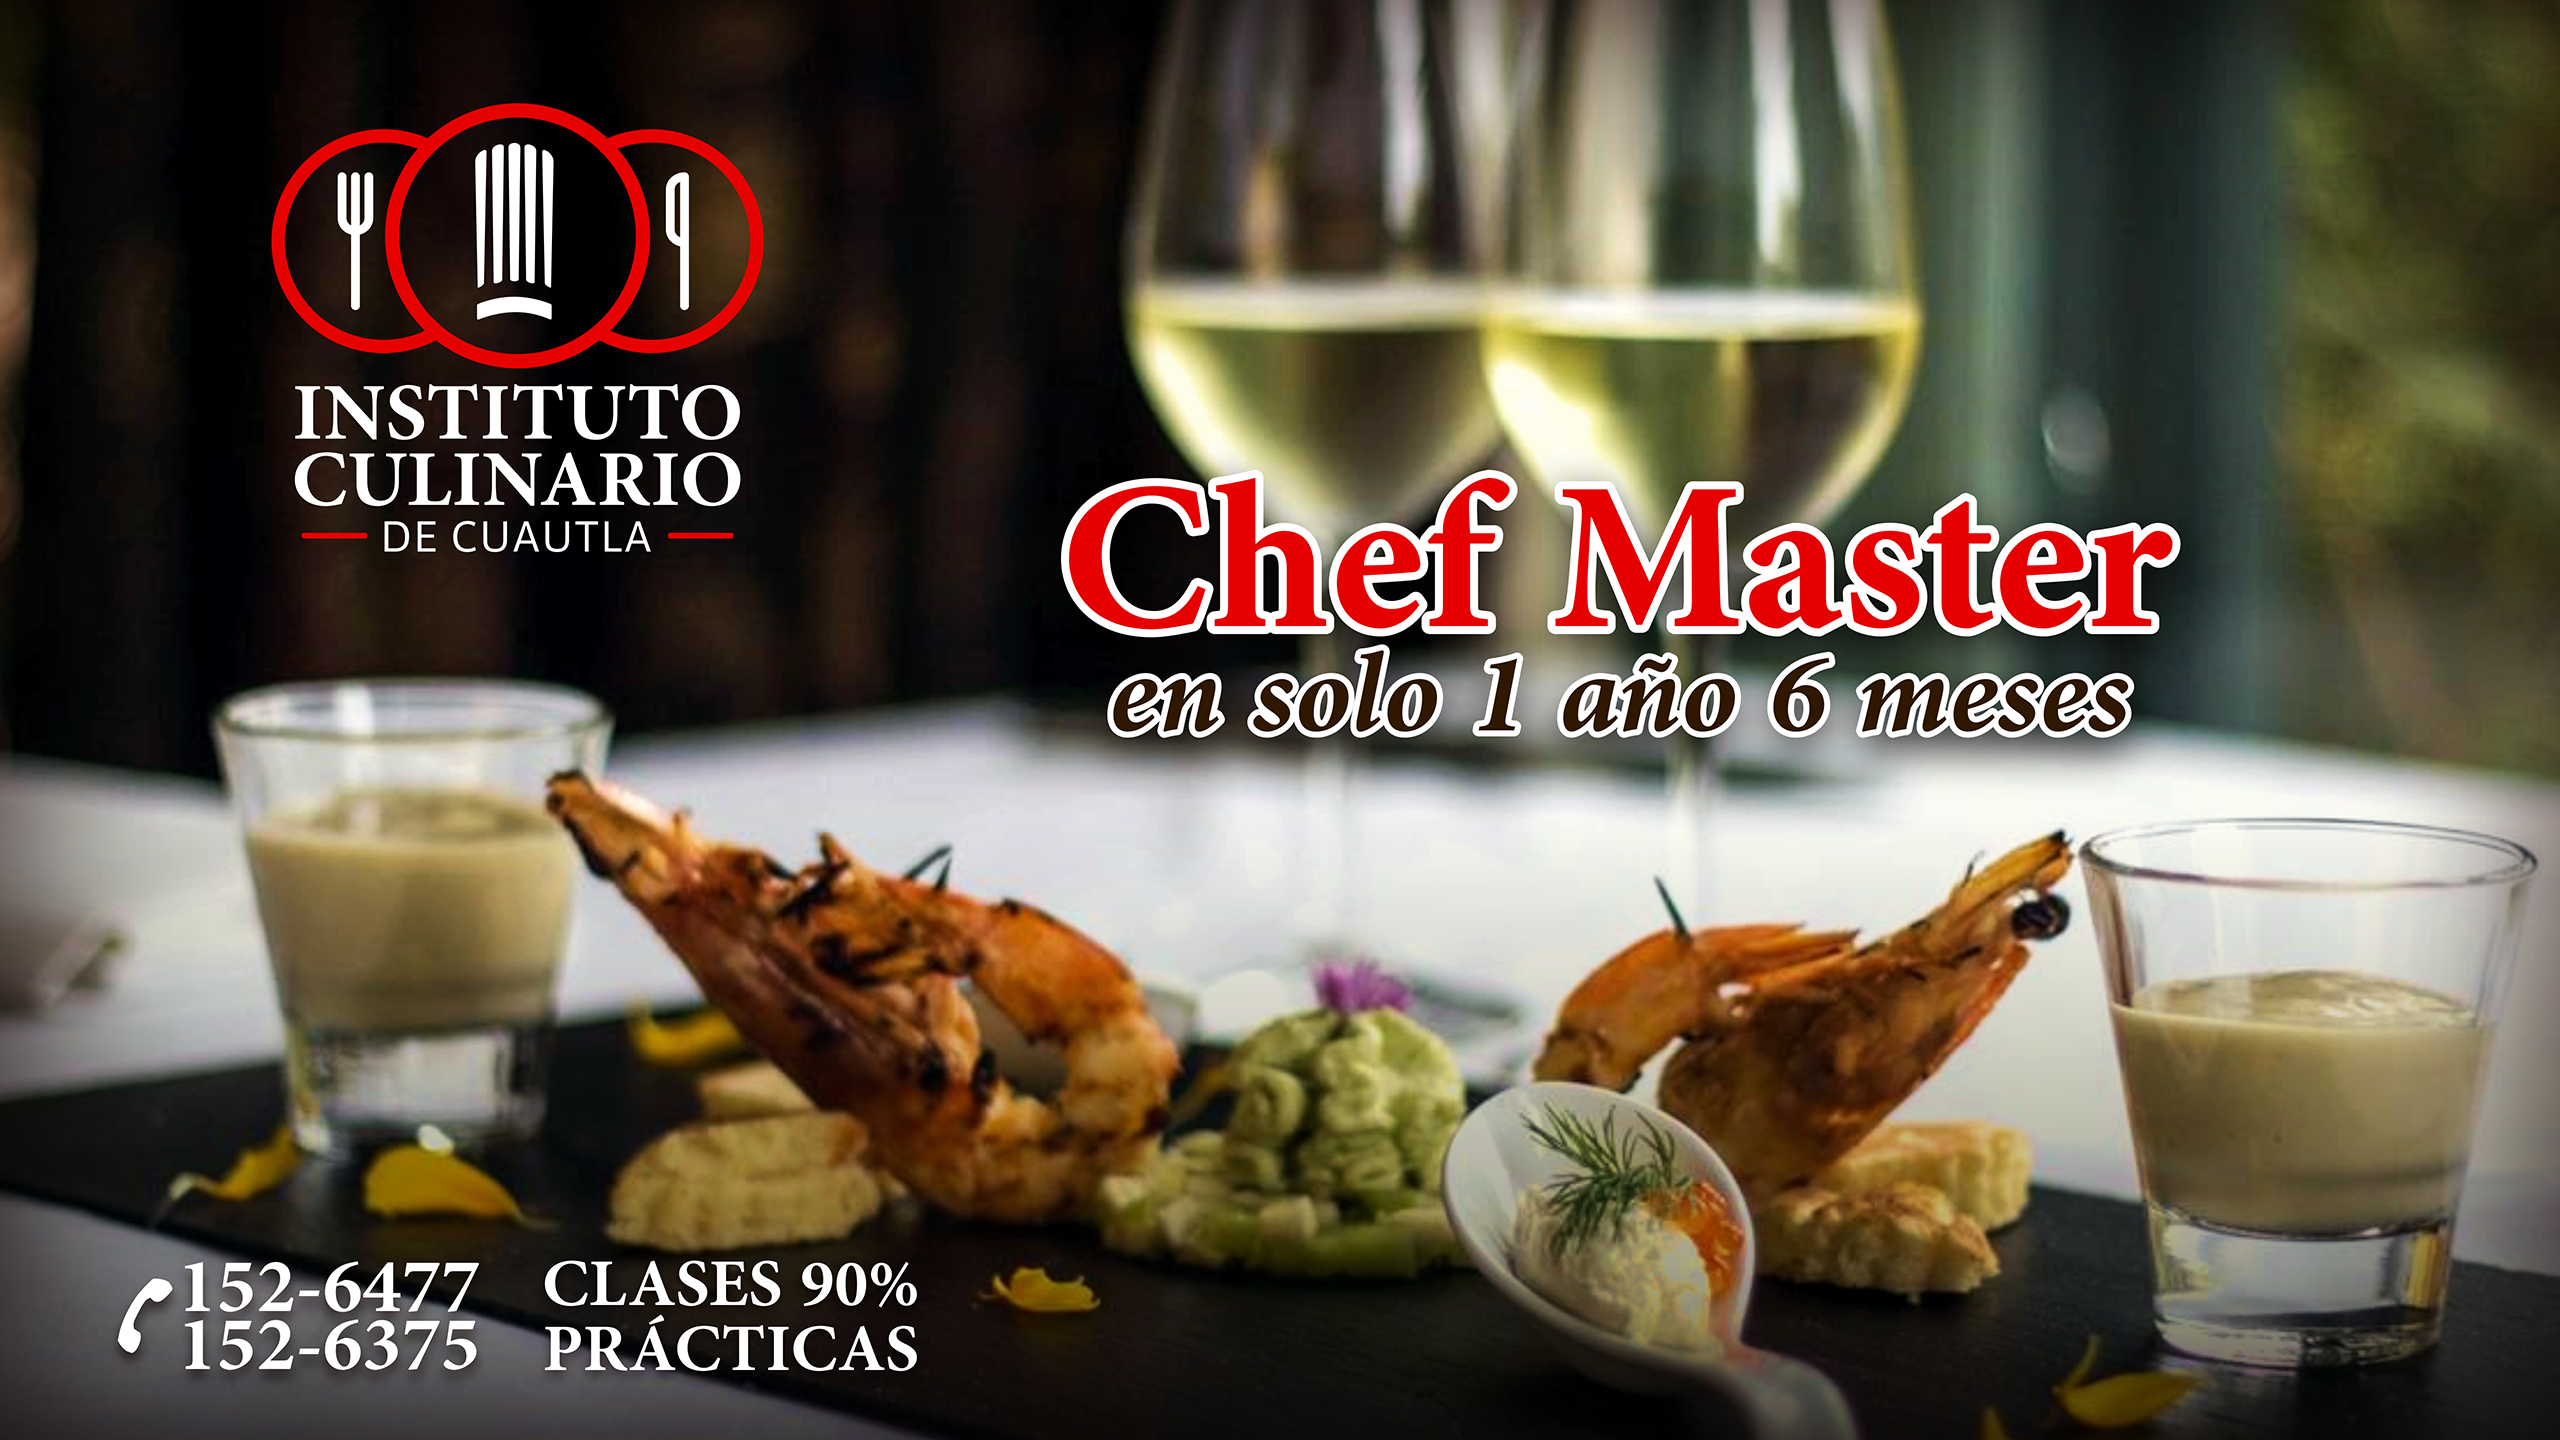 Cursos de Cocina Profesional "Instituto Culinario de Cuautla" Poster